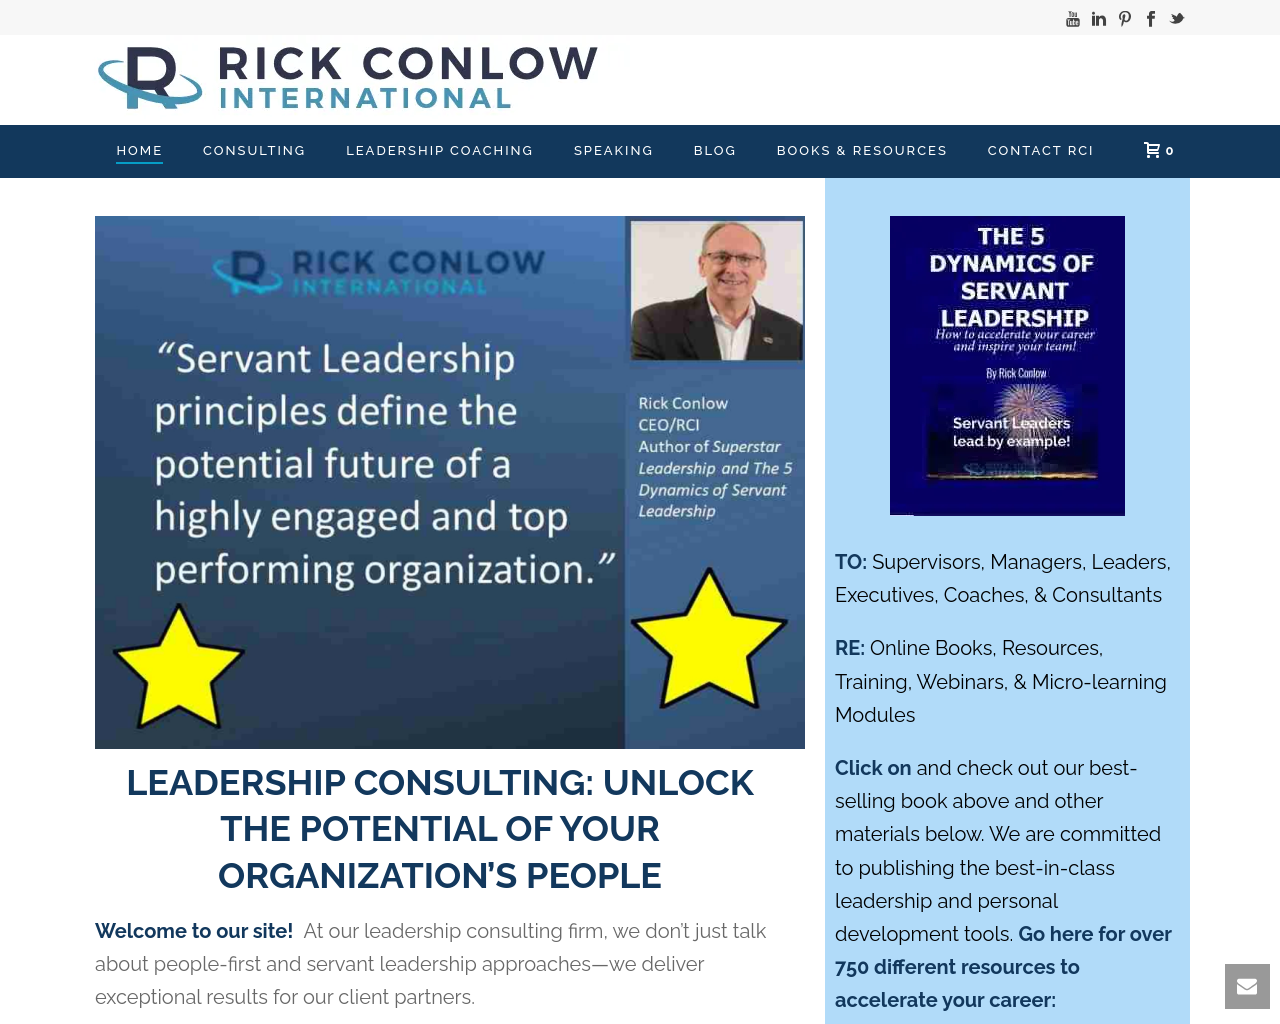 rickconlow.com